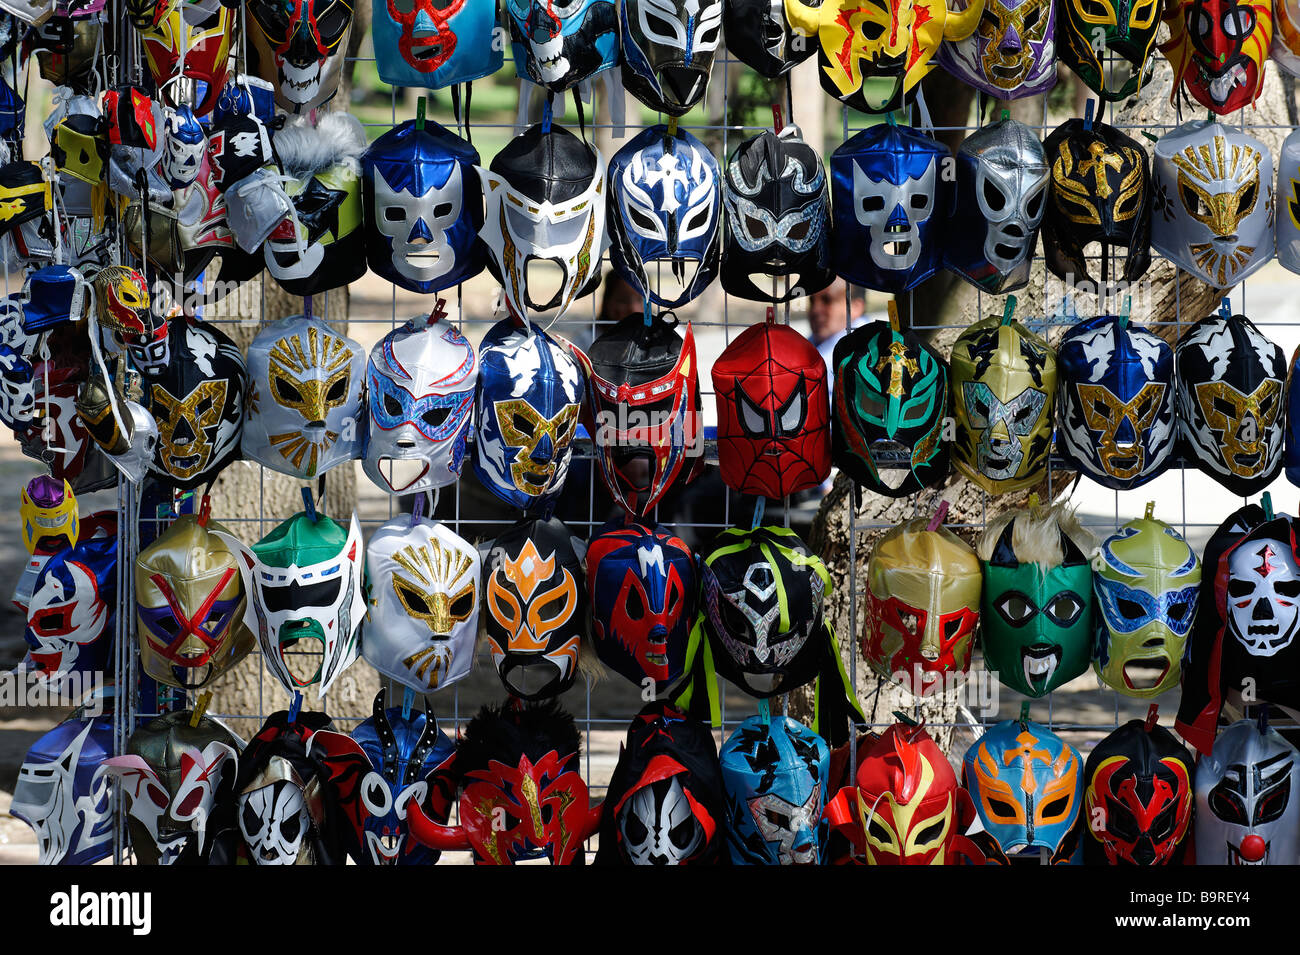 Masken für "Lucha Libre", mexikanischen wrestling zum Verkauf in Mexiko-Stadt  Stockfotografie - Alamy